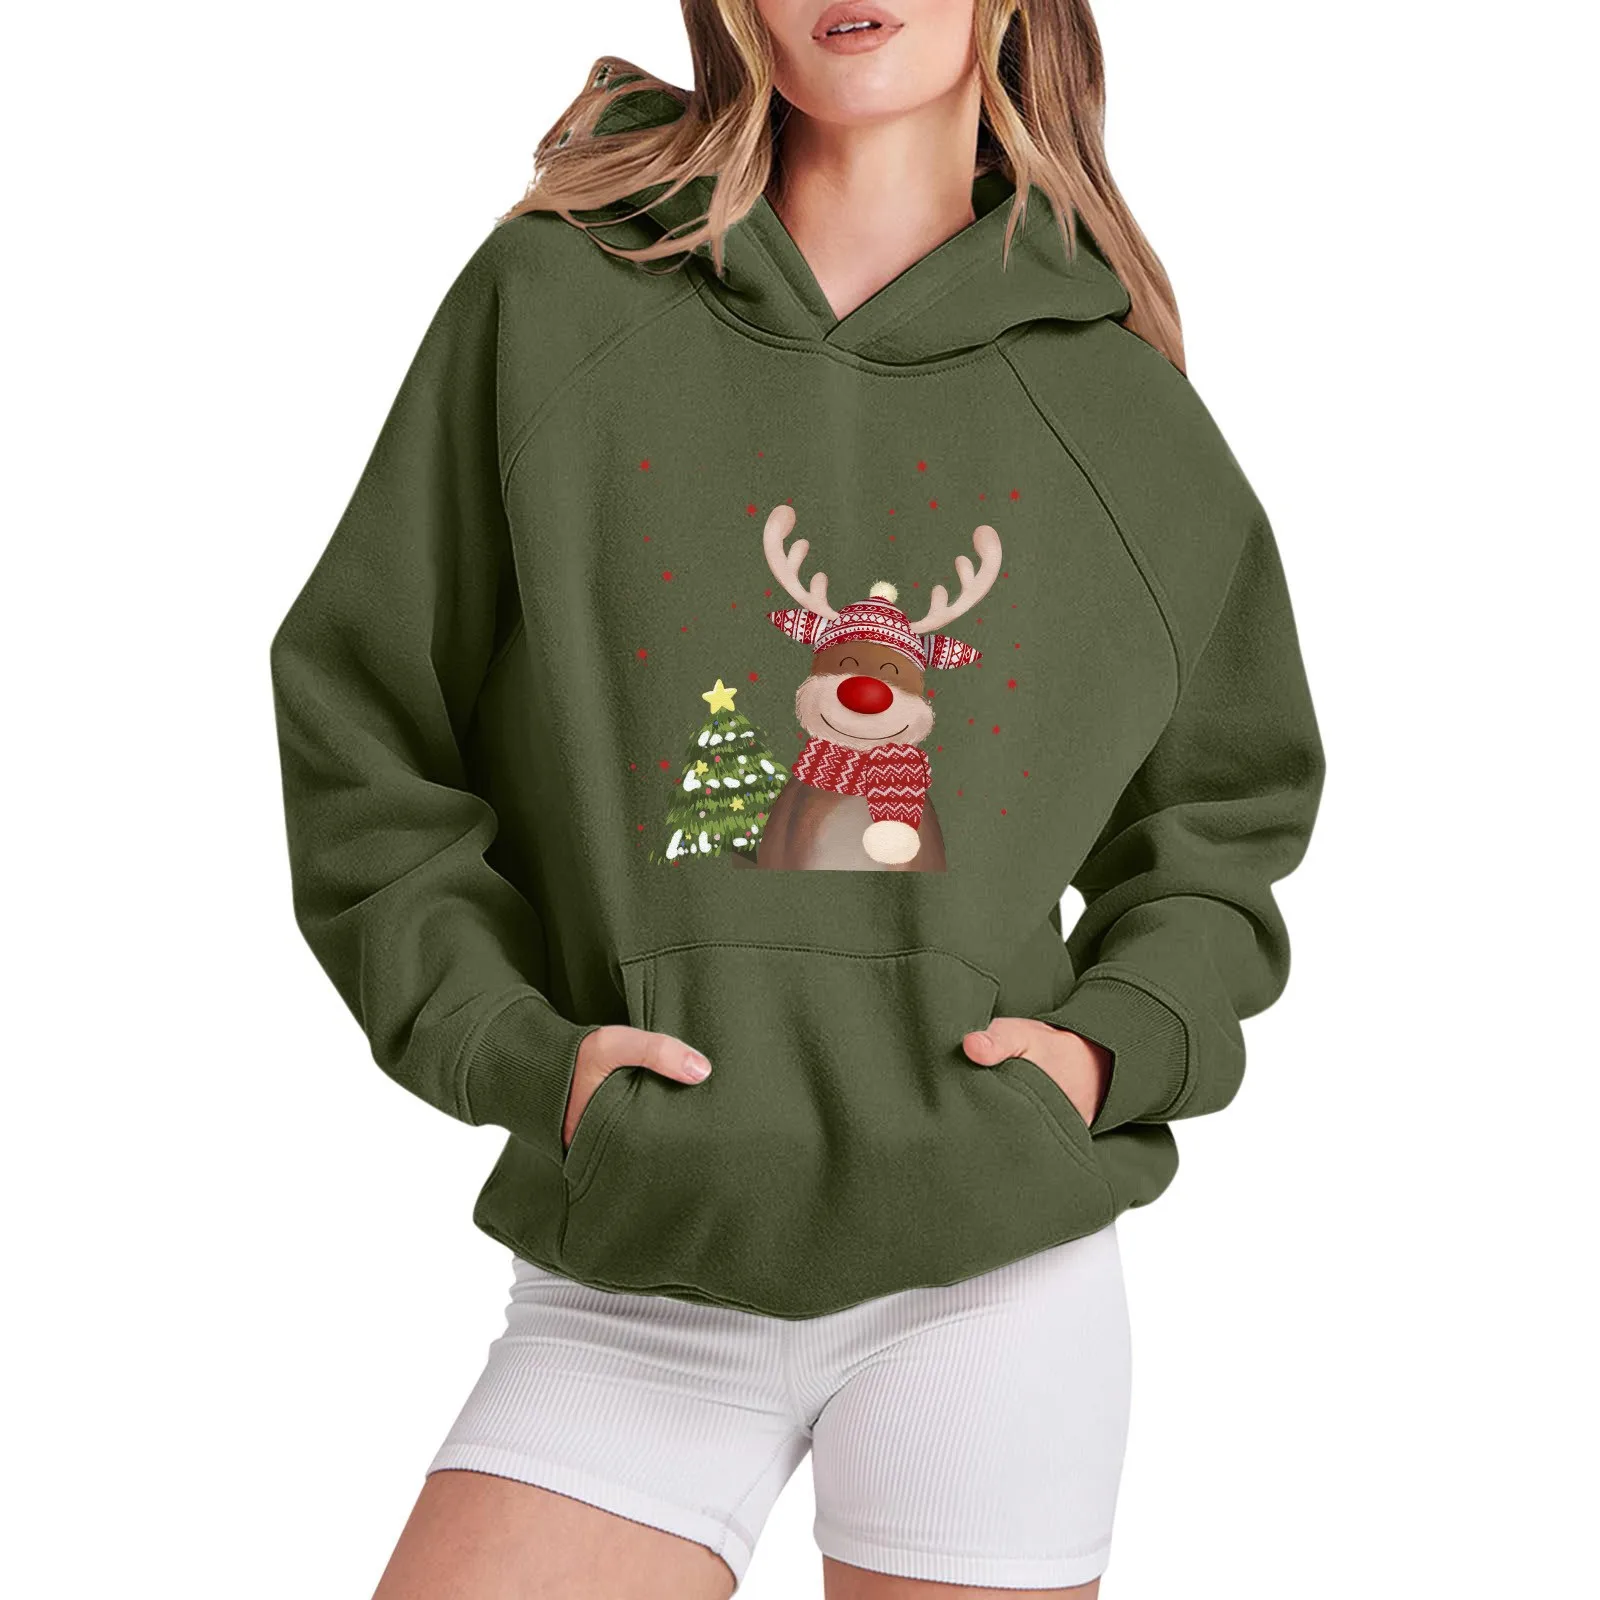 

Merry Christmas Graphic Hoodies Sweatshirt Women Long Raglan Sleeve Christmas Snowflake Santa Tree Hat Hooded Sweater Tops